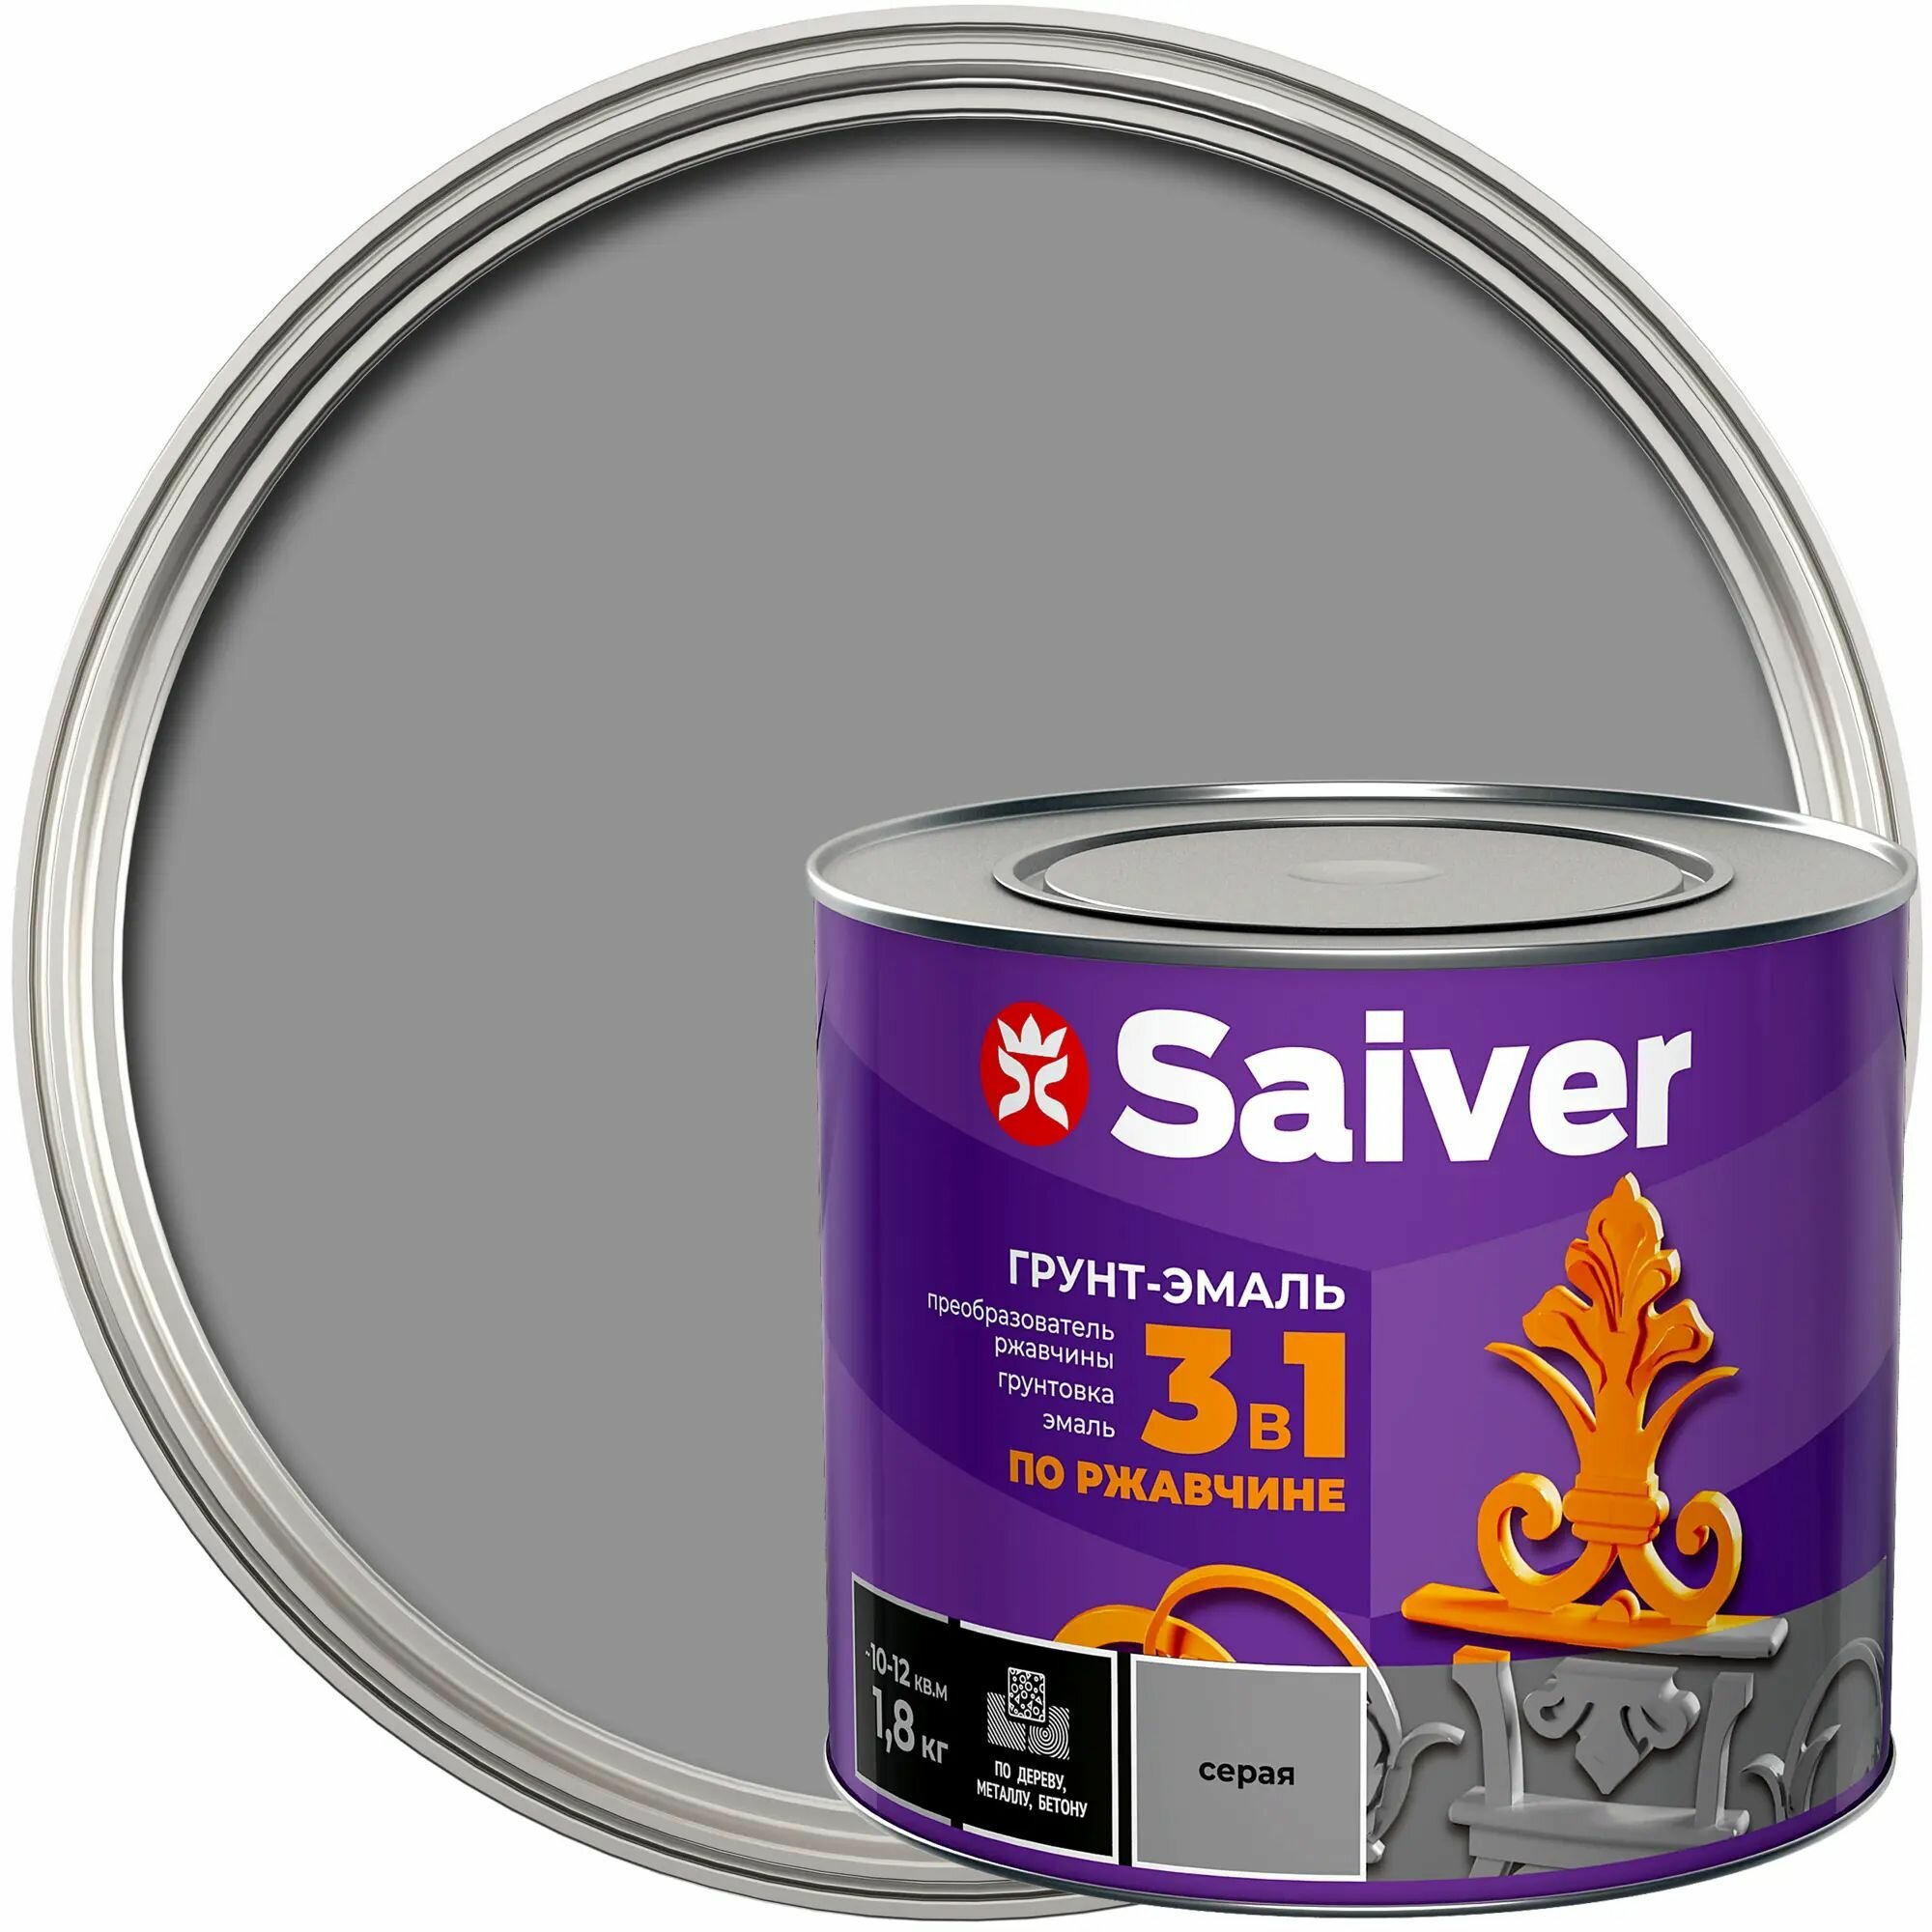 Антикоррозионная эмаль Saiver цвет серый 1.8 кг